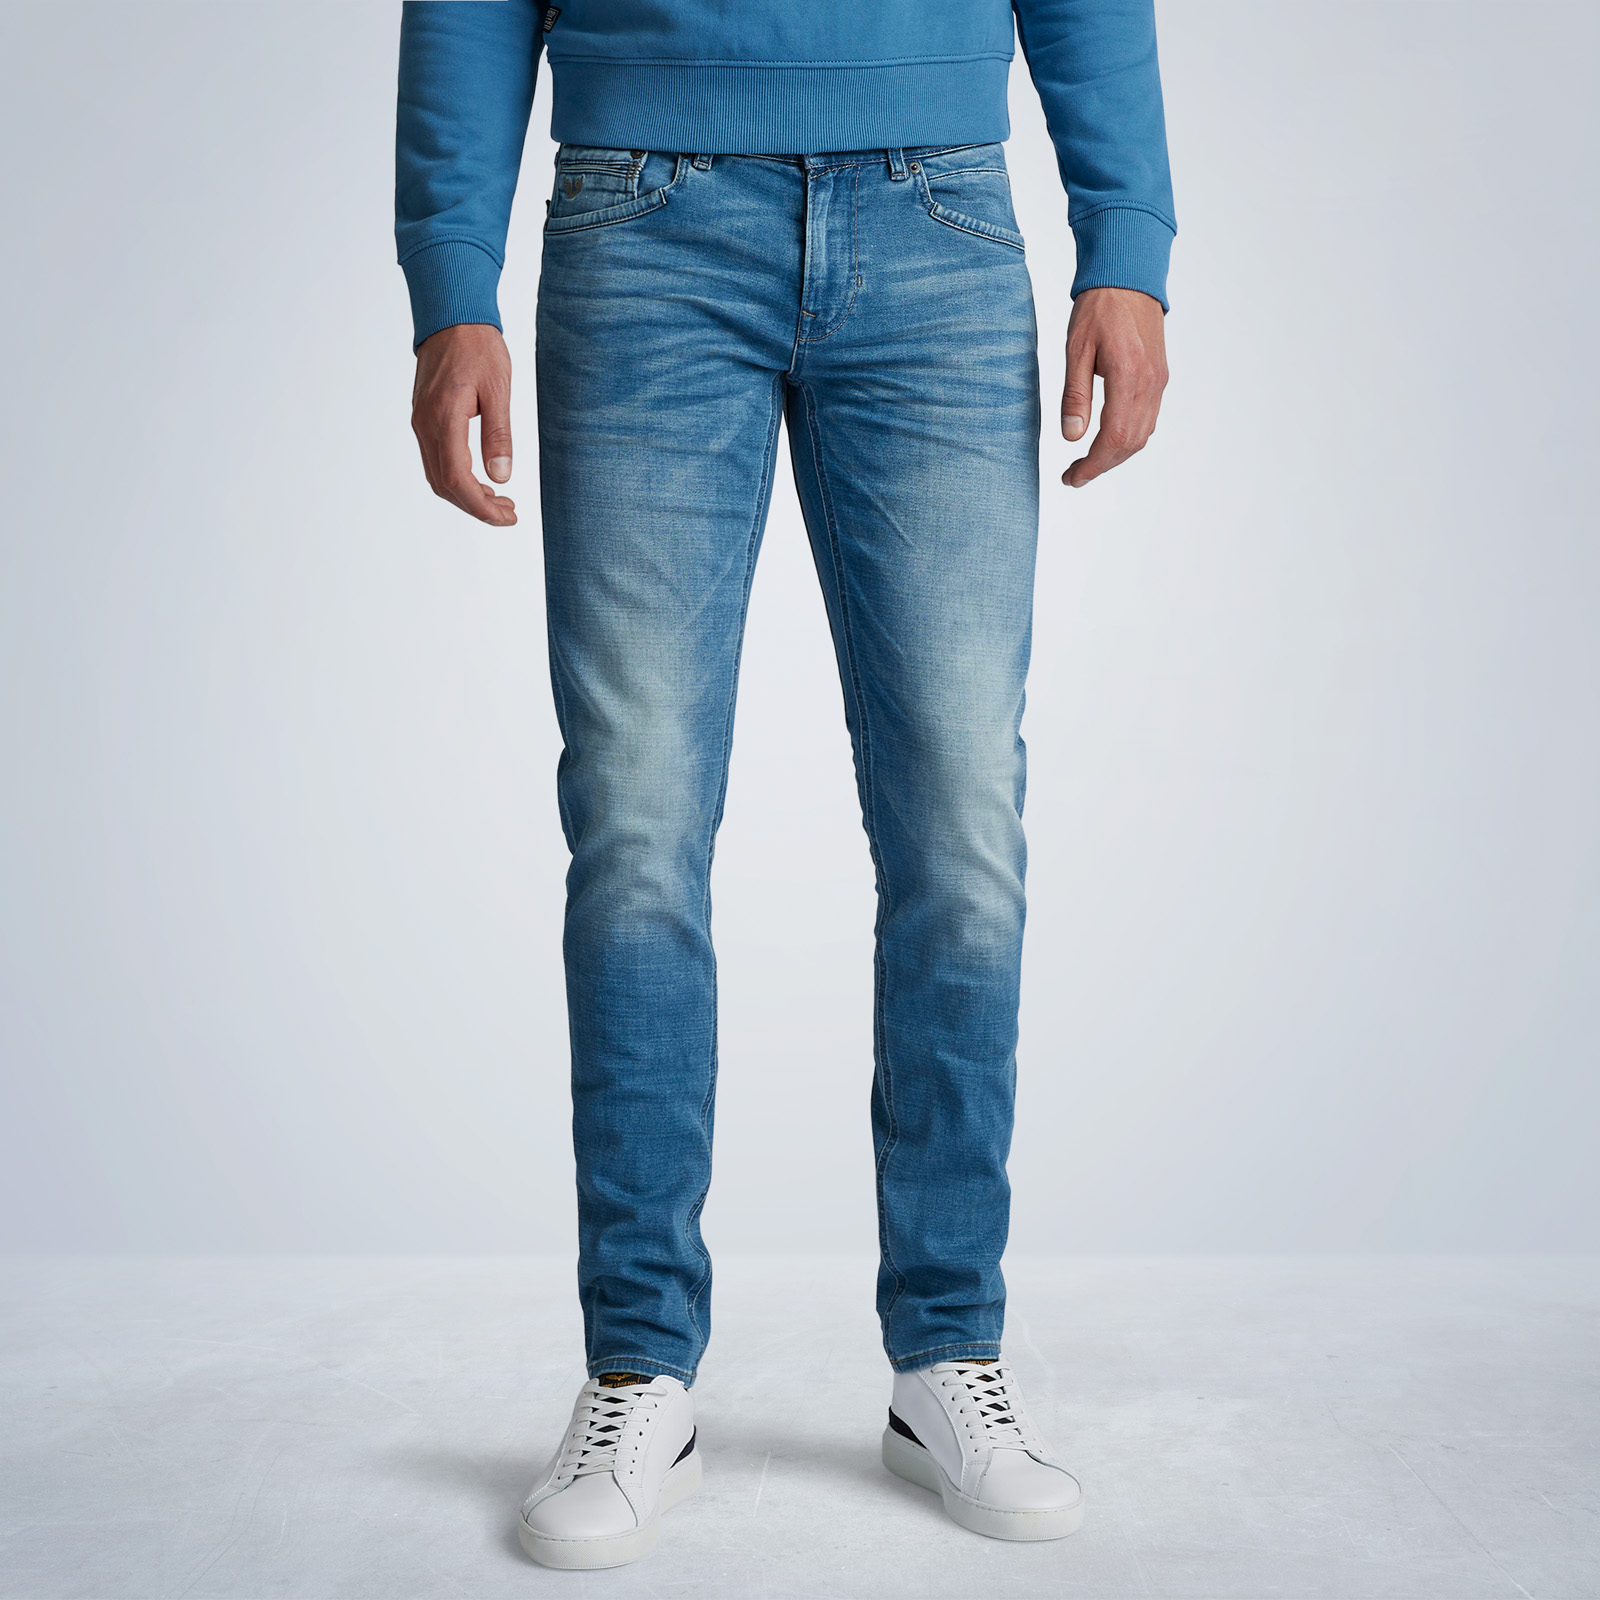 PME JEANS | Soft Mid Blue Jeans verzending retourneren